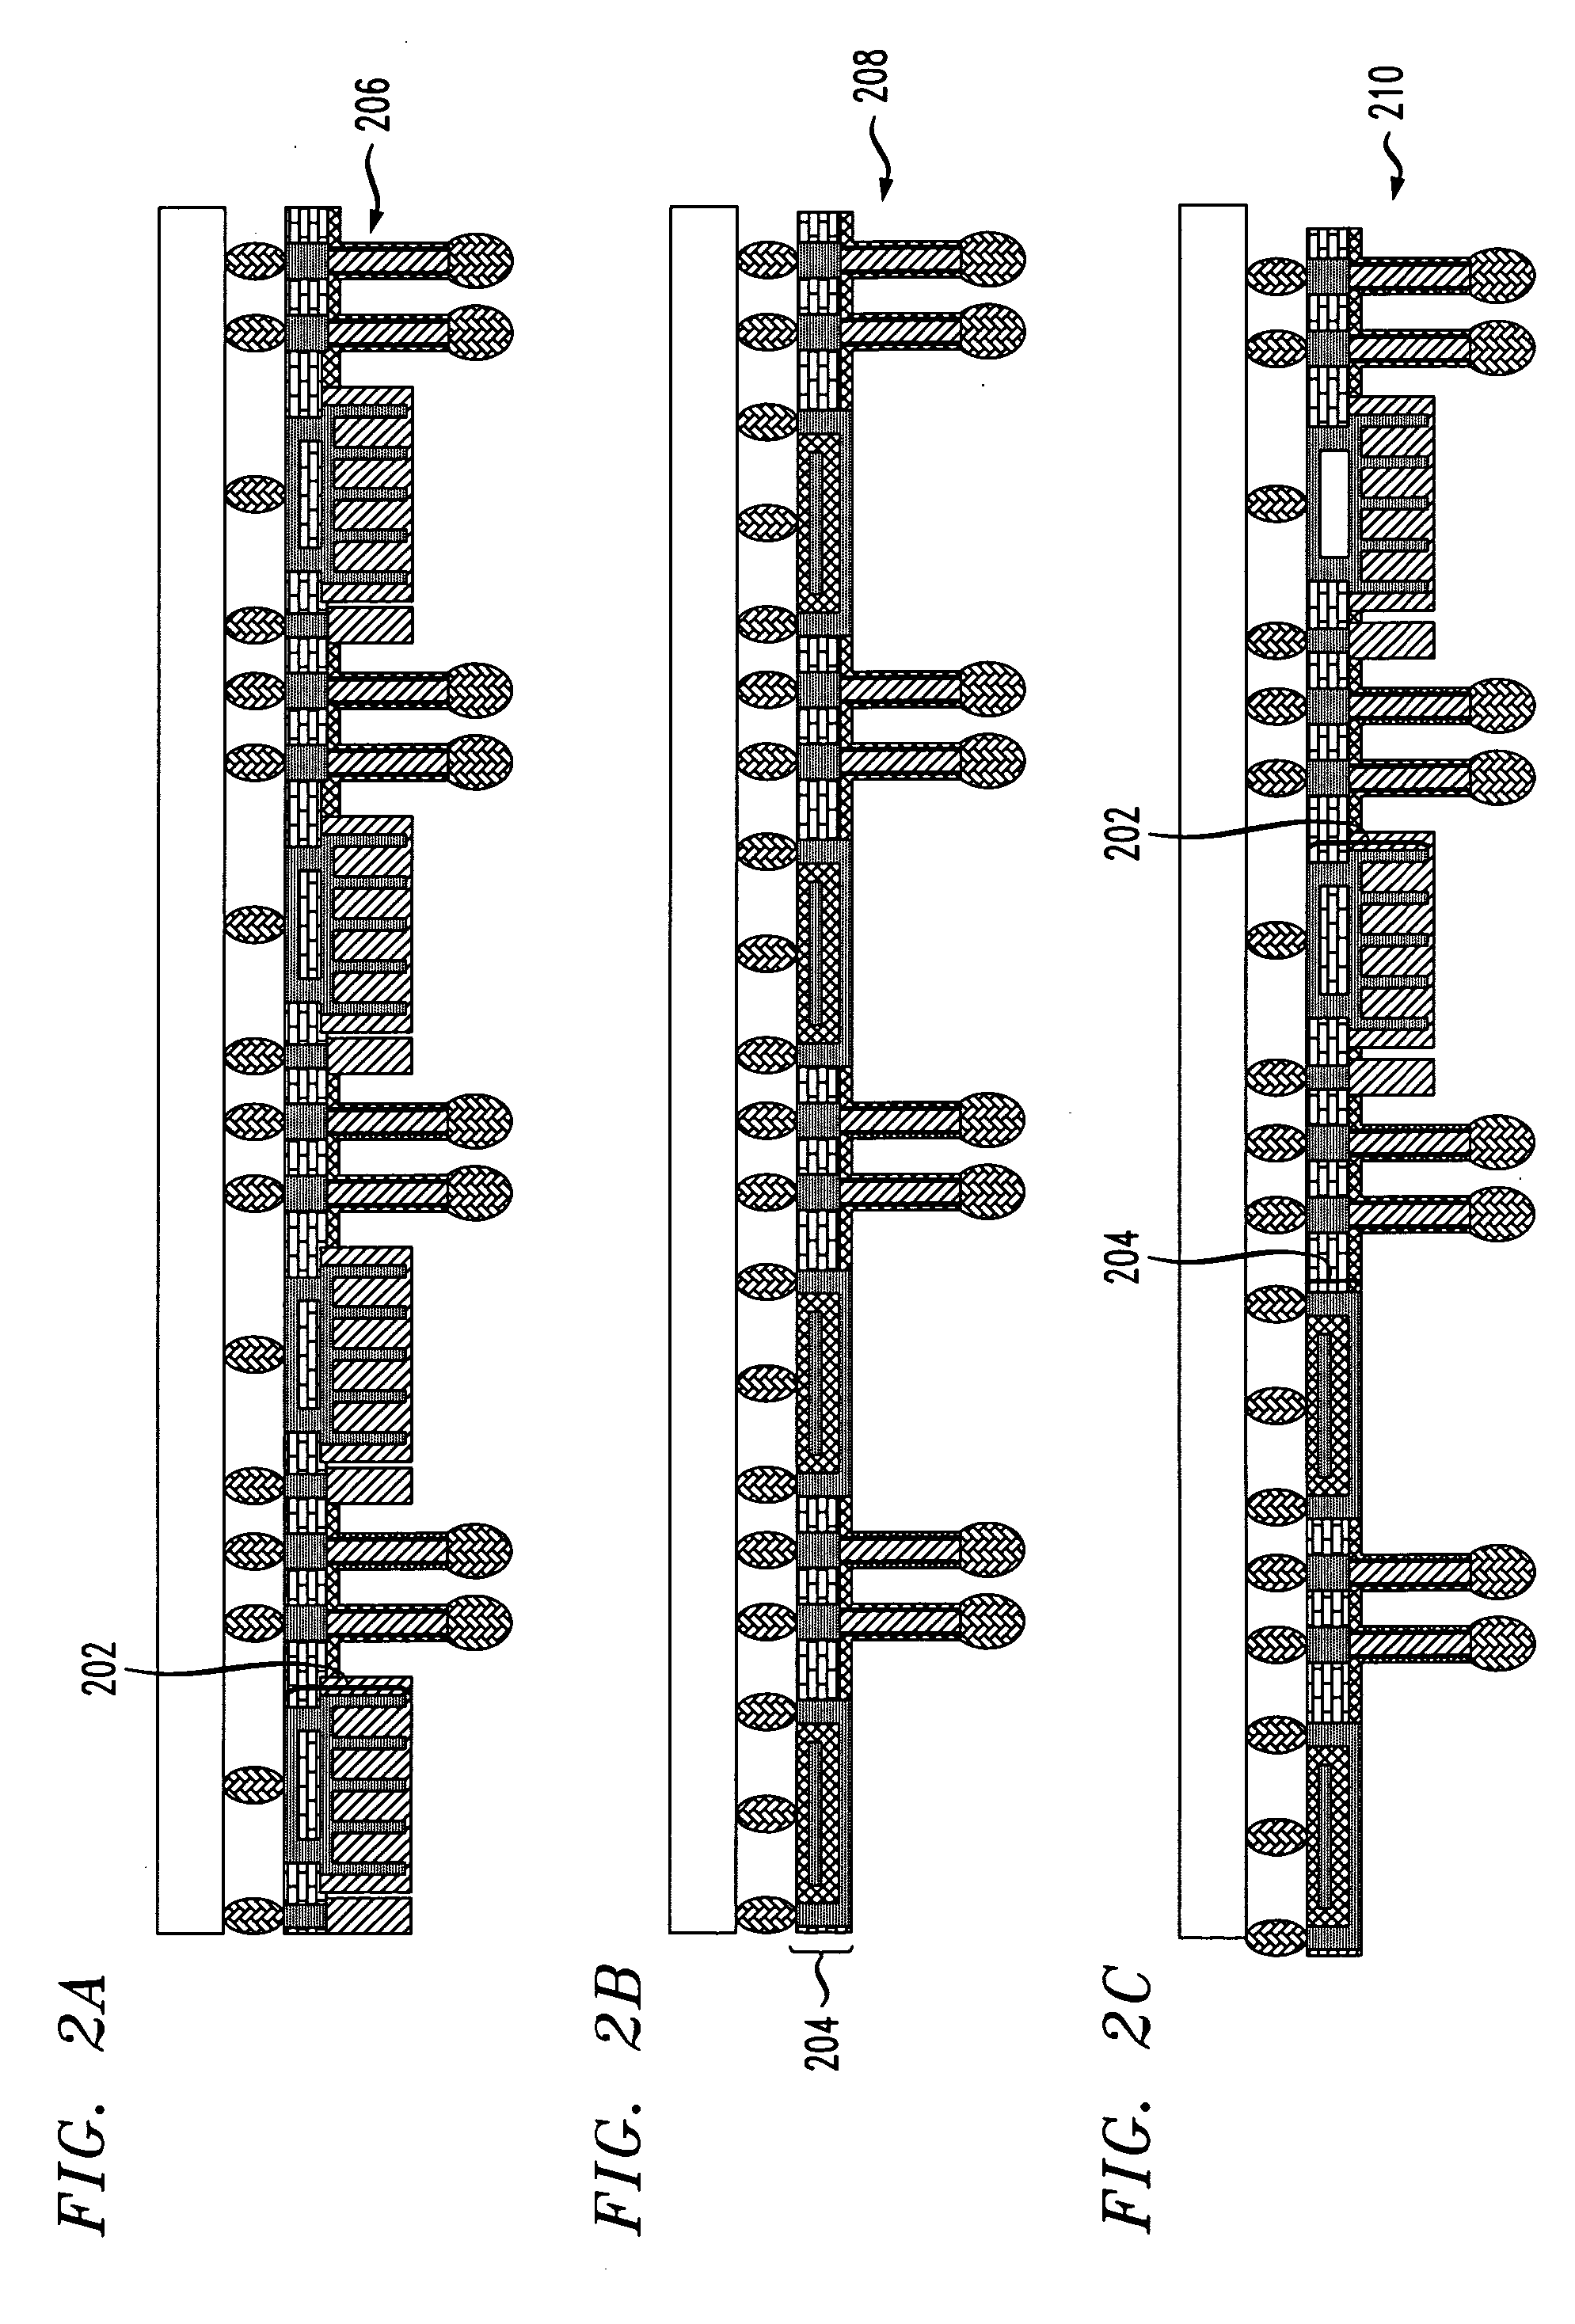 Techniques for providing decoupling capacitance